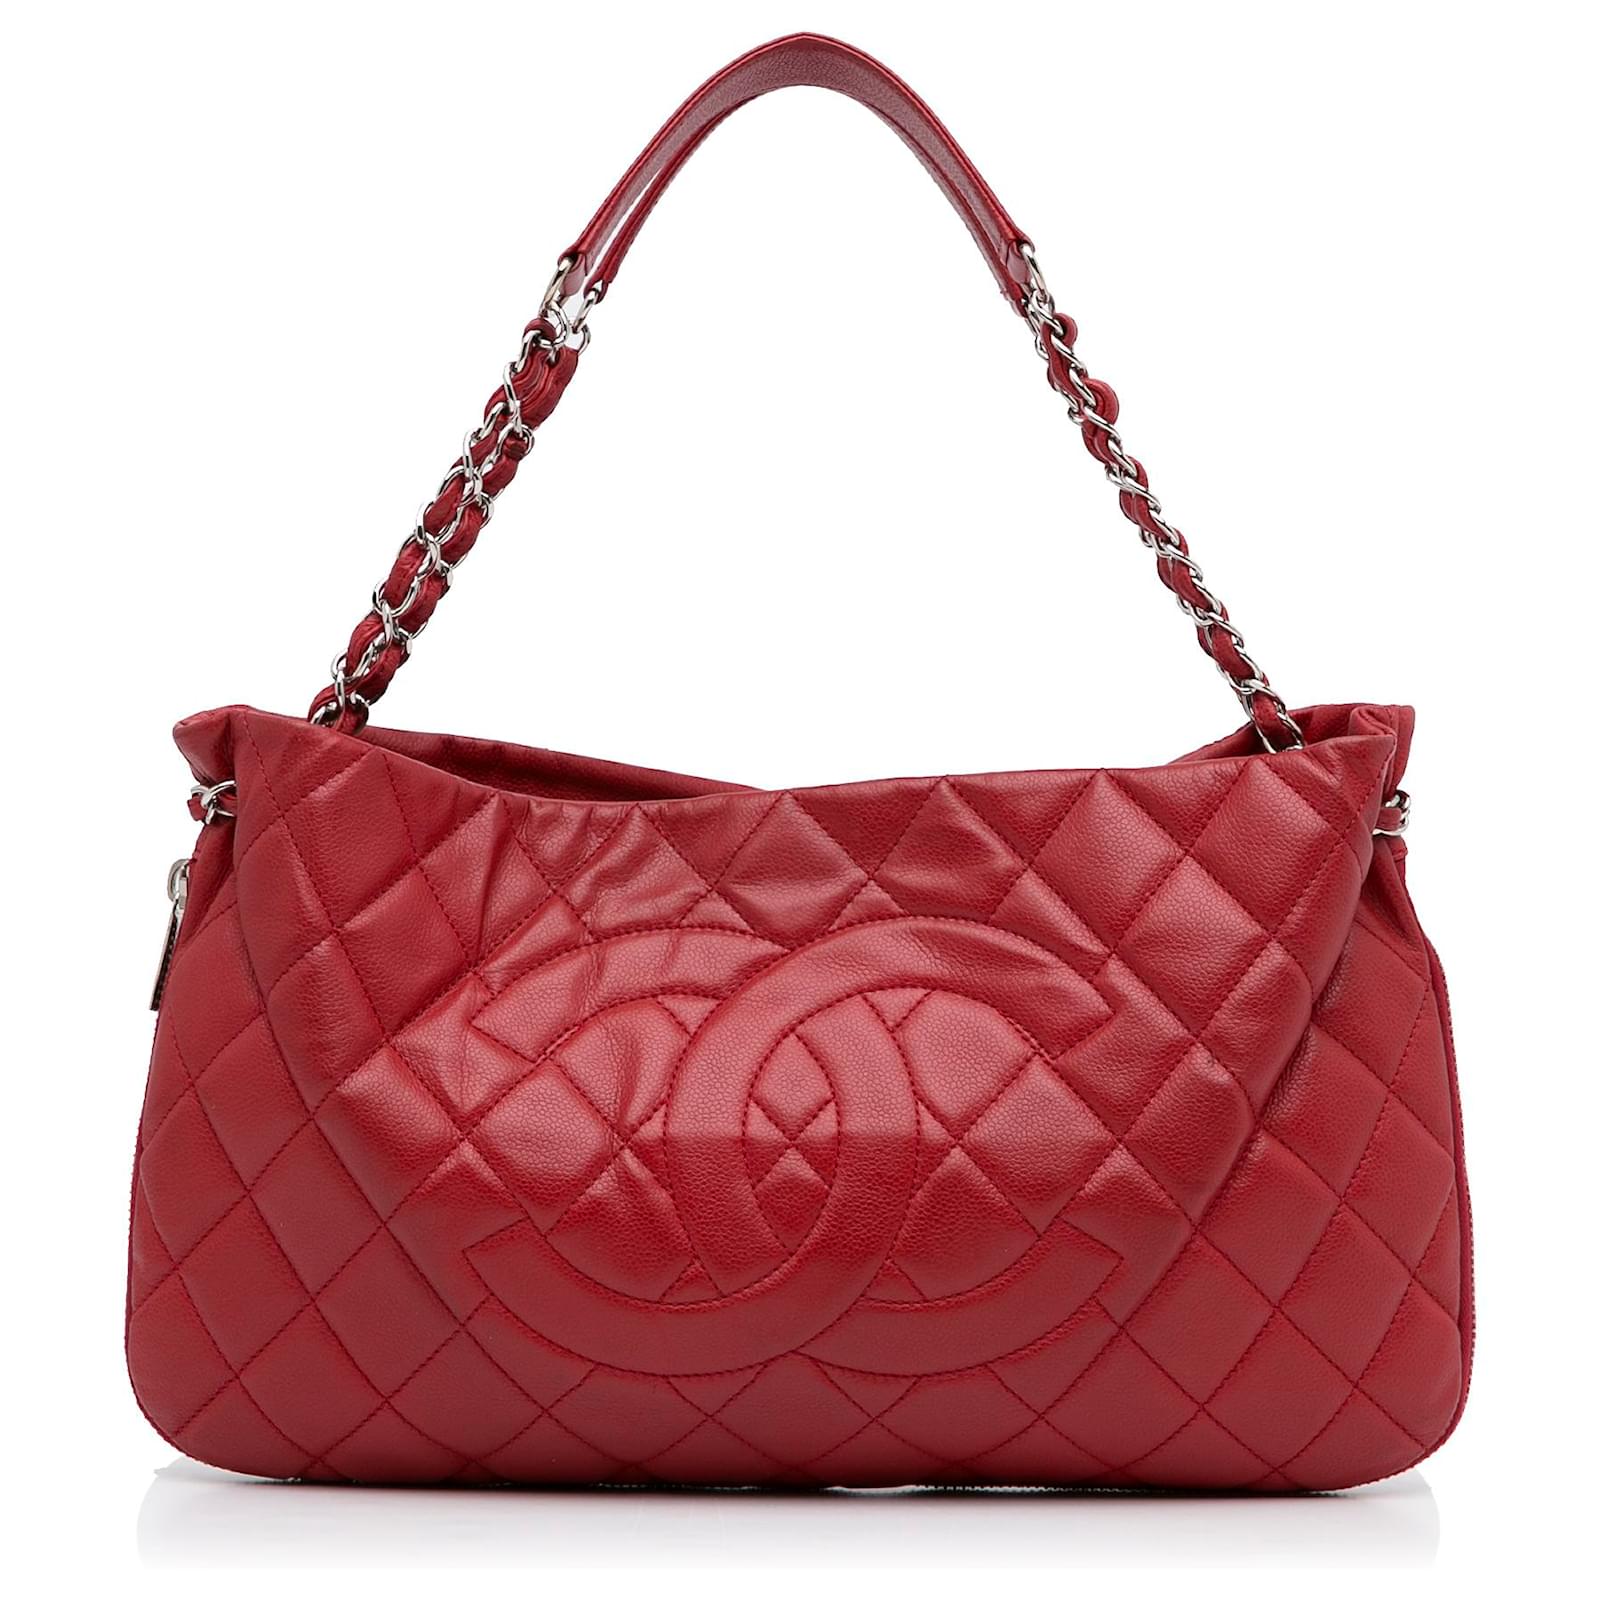 Chanel Red CC Caviar Tote Bag